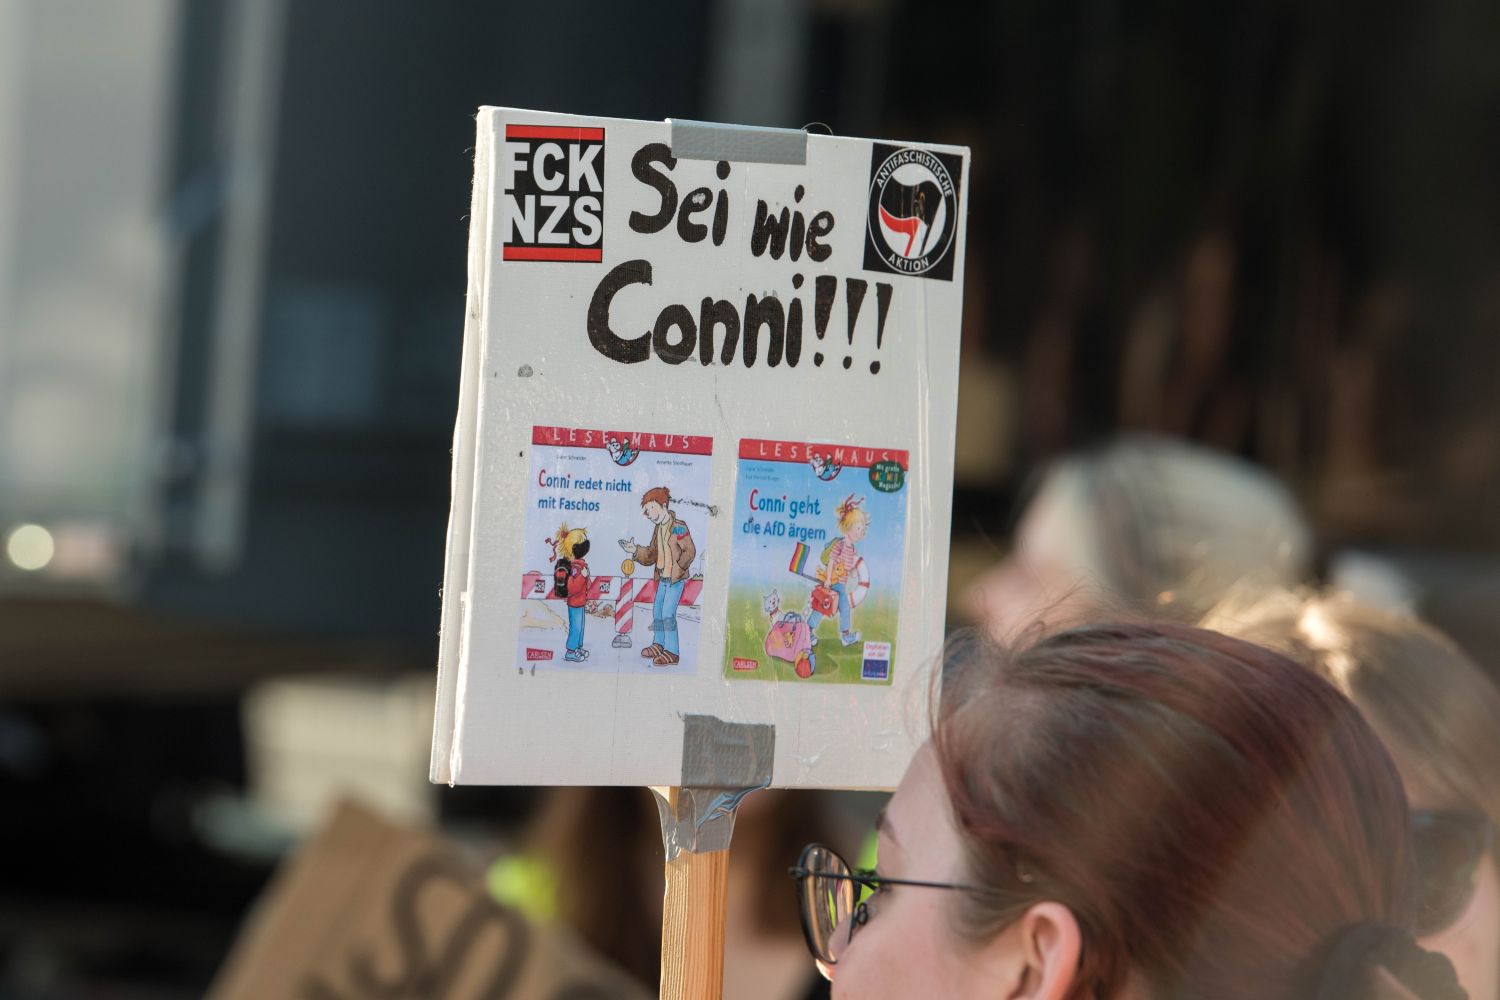 Laut - Bunt - Entschlossen! Protest gegen den Bundesparteitag der AfD in Essen <i>Bild Christian Schneider/R-mediabase</i> <br><a href=/confor2/?bld=82889&pst=82663&aid=615&dc=1913&i1=Christian%20Schneider/R-mediabase><strong>Downloadanfrage</strong></a>  